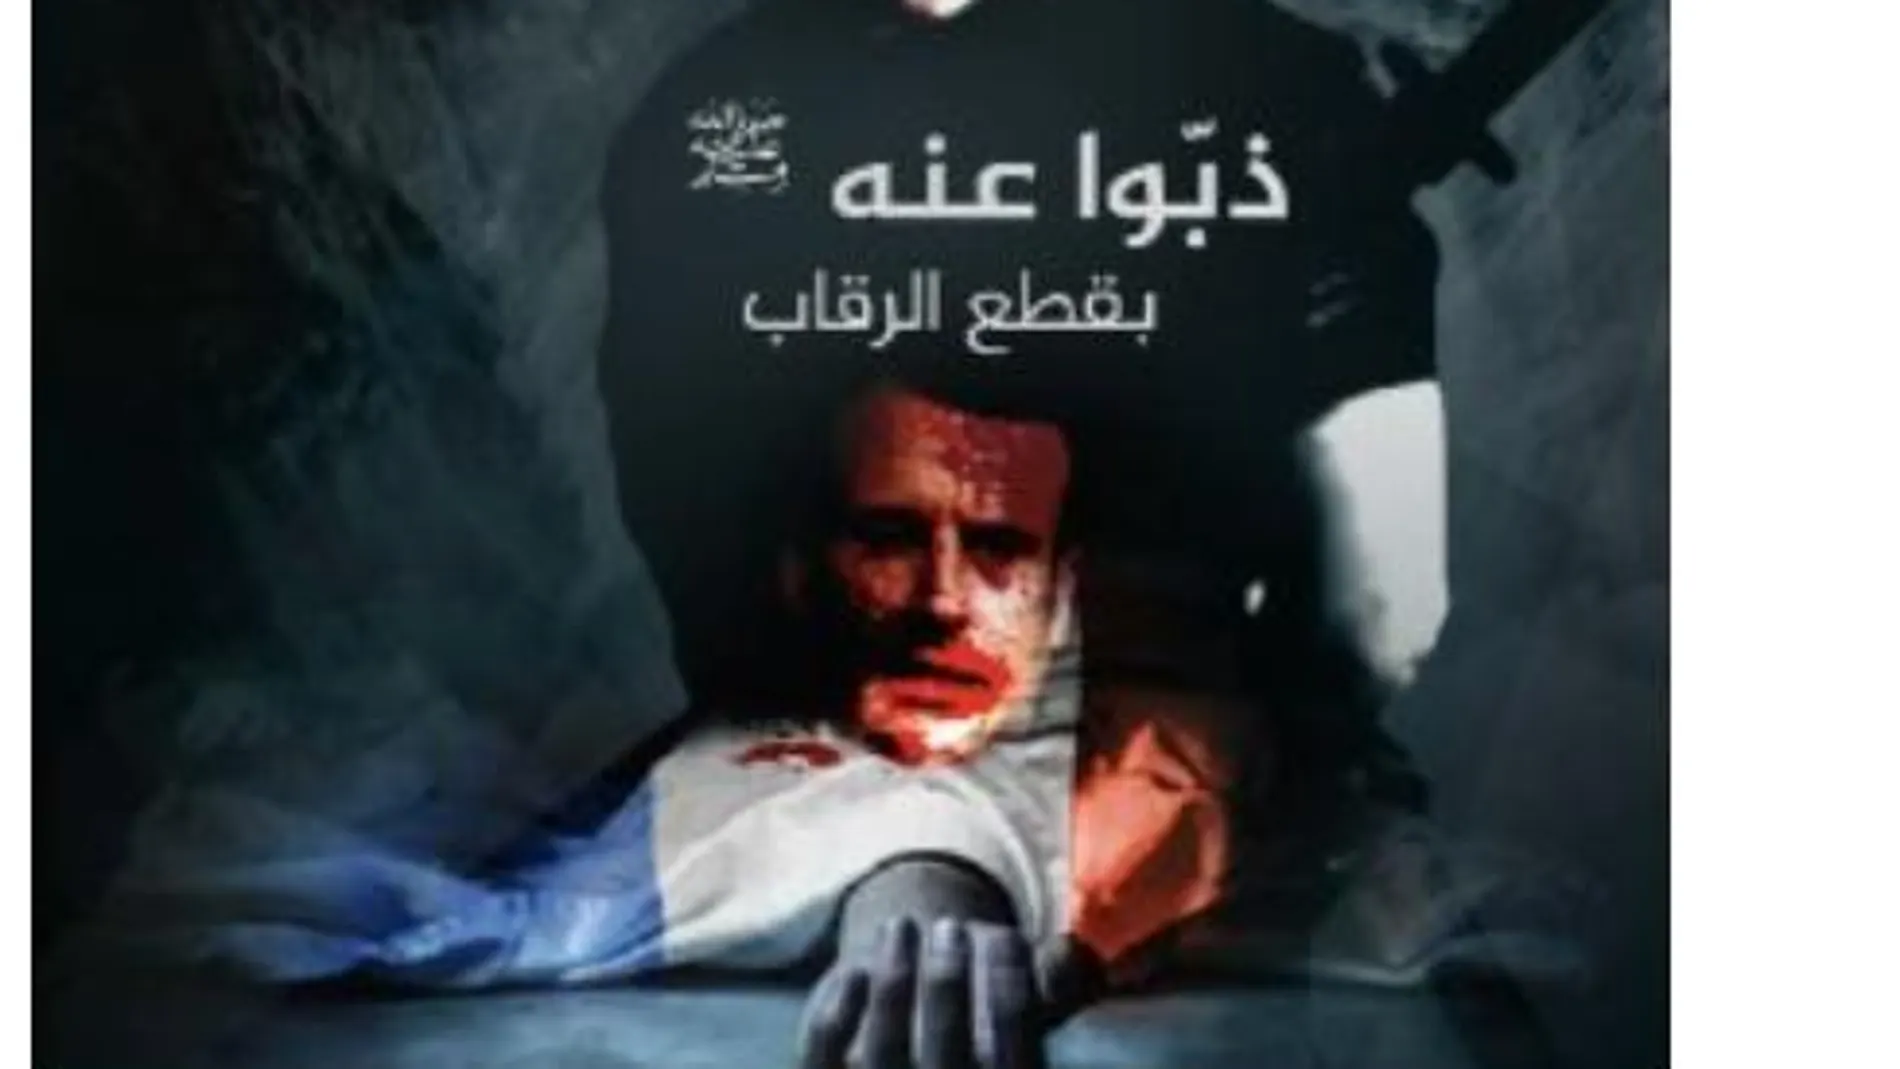 La imagen de Abdoullakh Anzorov, asesino del profesor francés, al que decapitó, es utilizada para presentar el vídeo